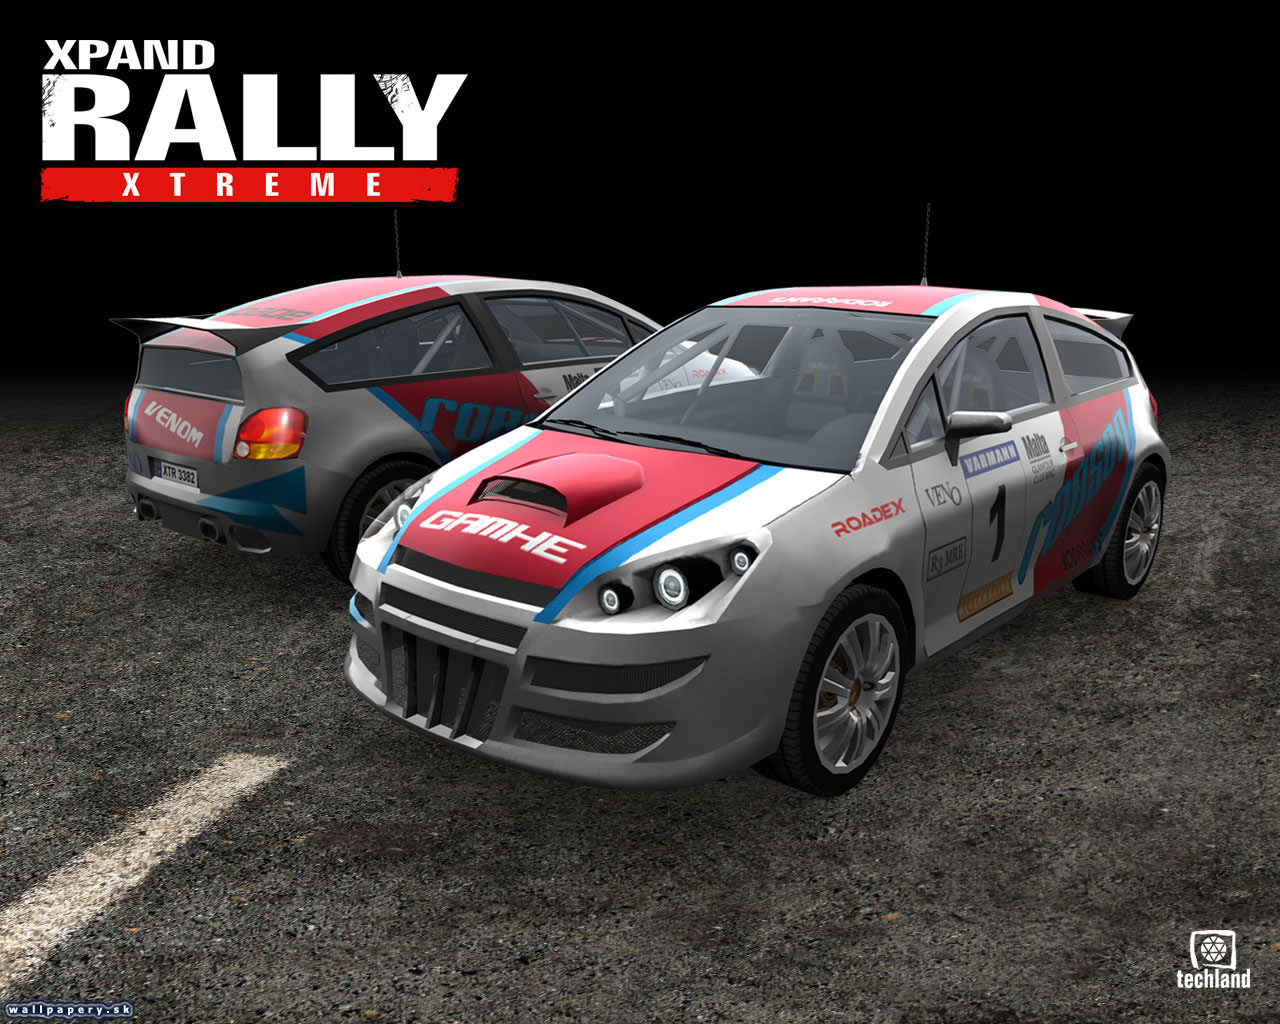 Xpand Rally Xtreme - wallpaper 7